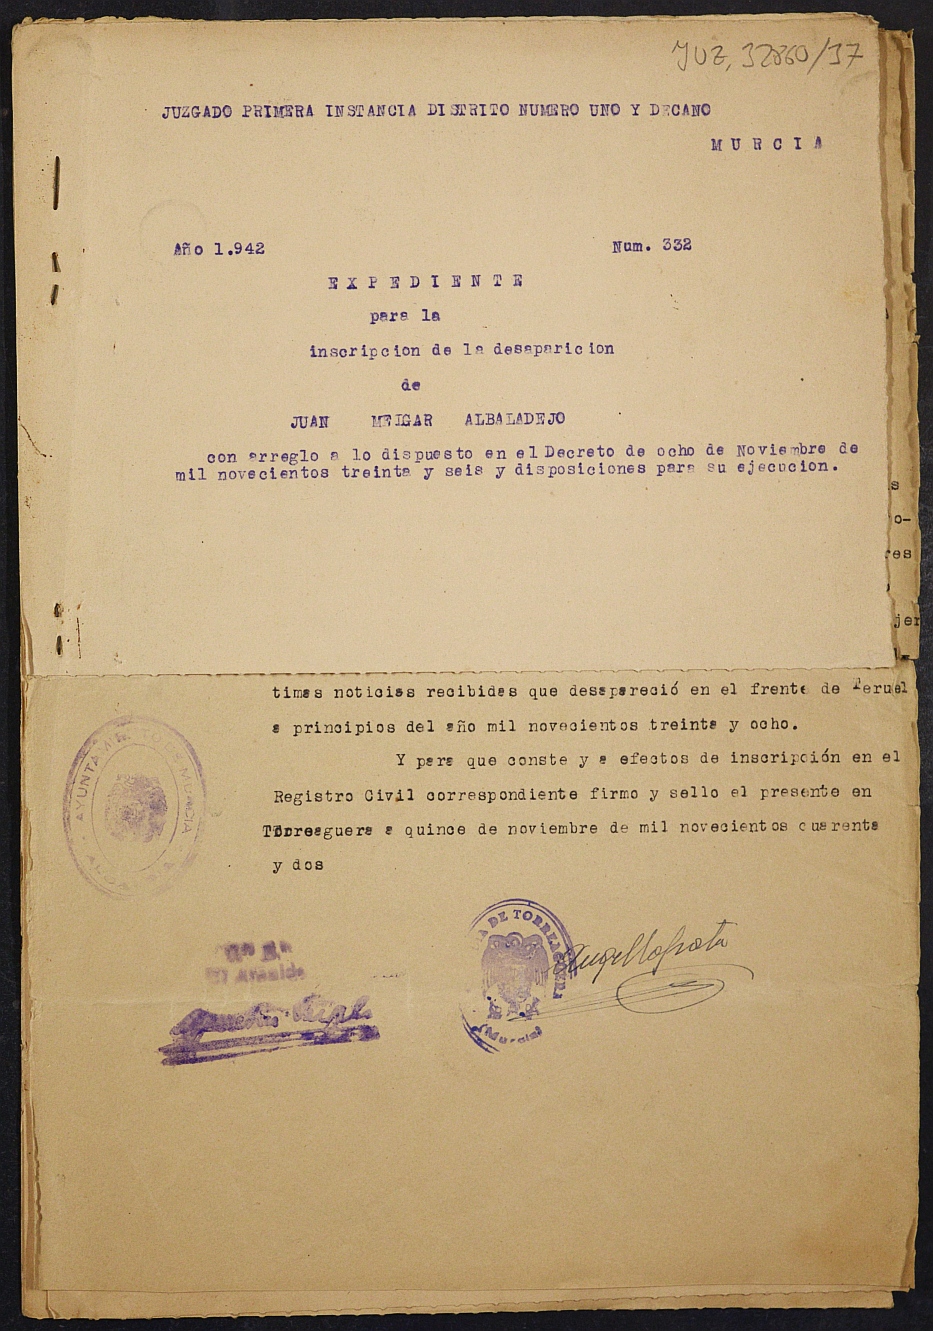 Expediente nº 332/1942 del Juzgado de Primera Instancia de Murcia para la inscripción en el Registro Civil por la desaparición de Juan Melgar Albaladejo.